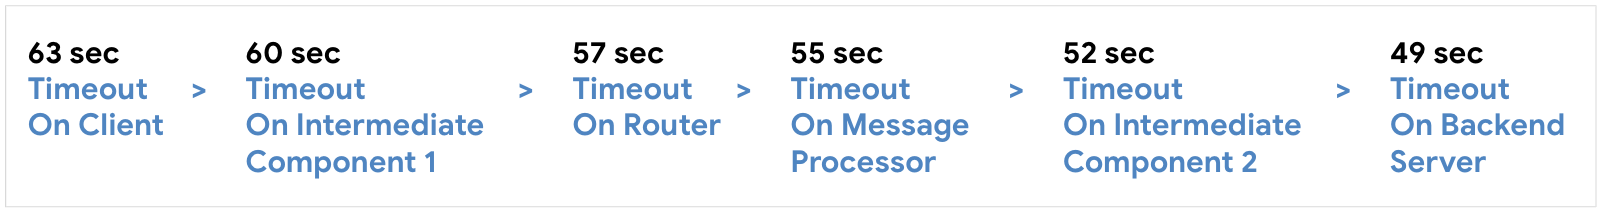 Định cấu hình thời gian chờ trên ứng dụng ở 63 giây, sau đó là Thành phần trung gian 1 ở 60 giây, sau đó là Bộ định tuyến ở 57 giây, sau đó là Bộ xử lý thông báo 55 giây, sau đó là Thành phần trung gian 2 ở 52 giây, sau đó Máy chủ phụ trợ ở 59 giây